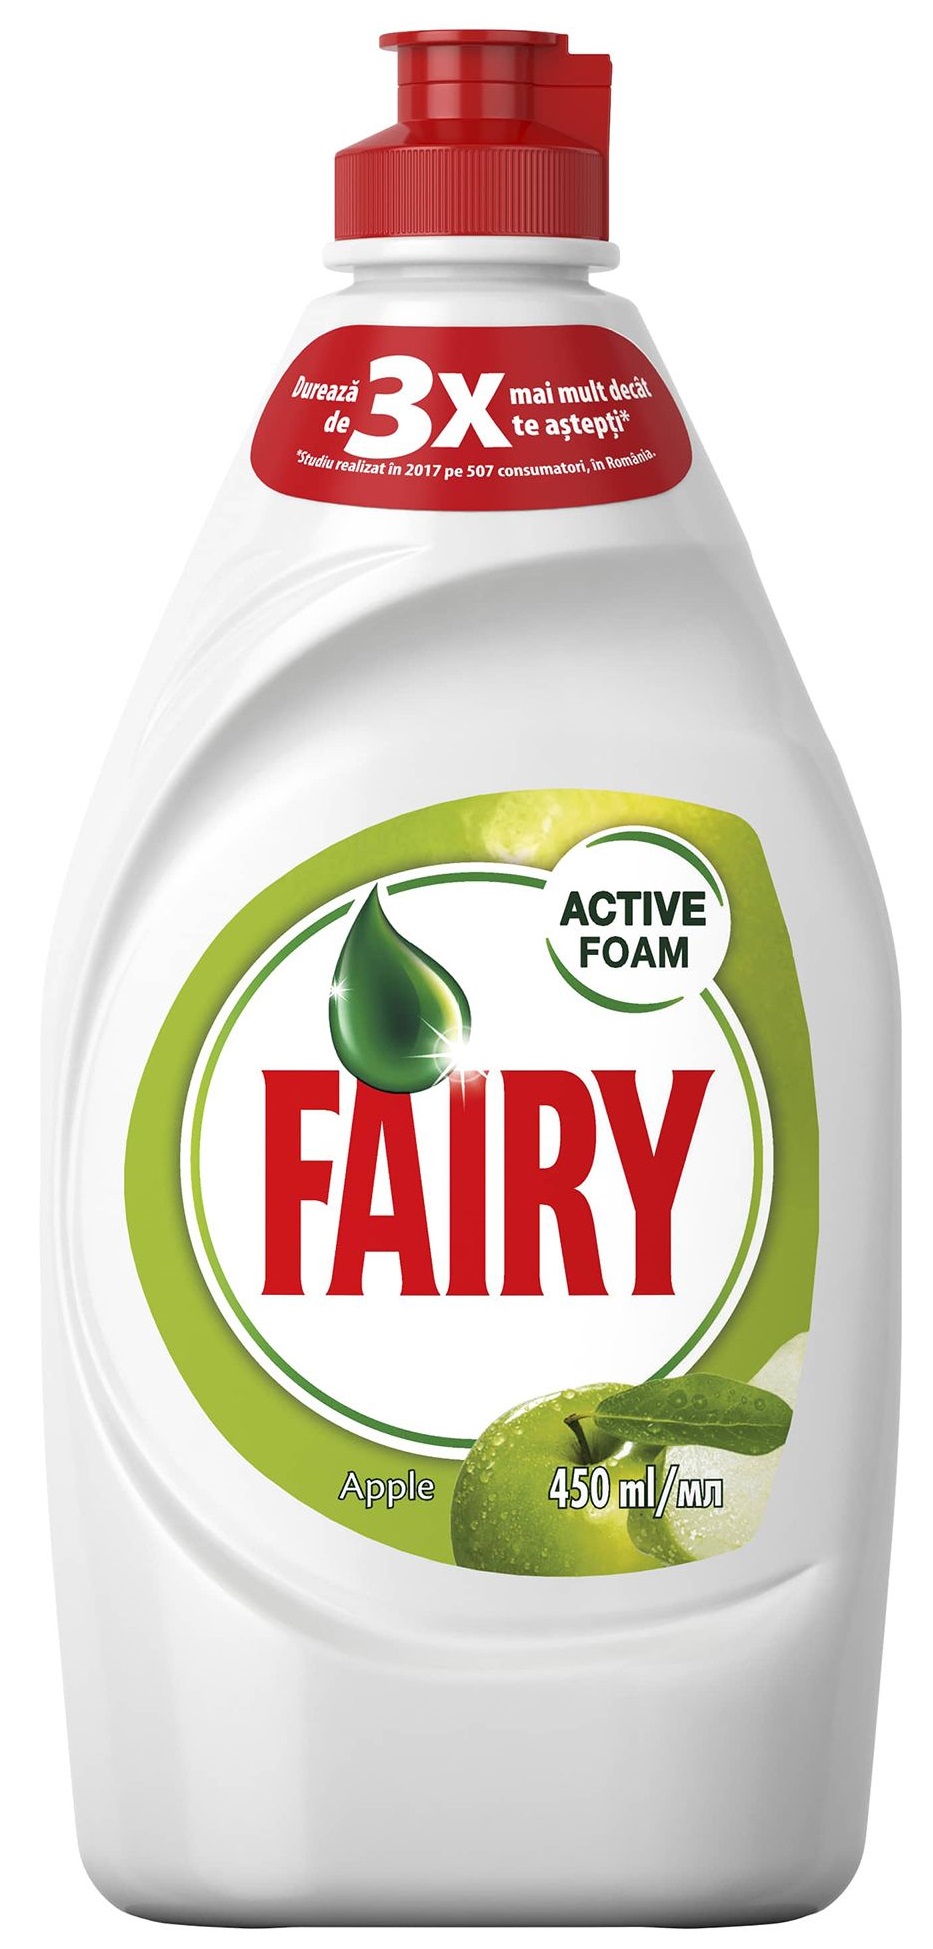 Detergent de vase FAIRY Apple, 450ml